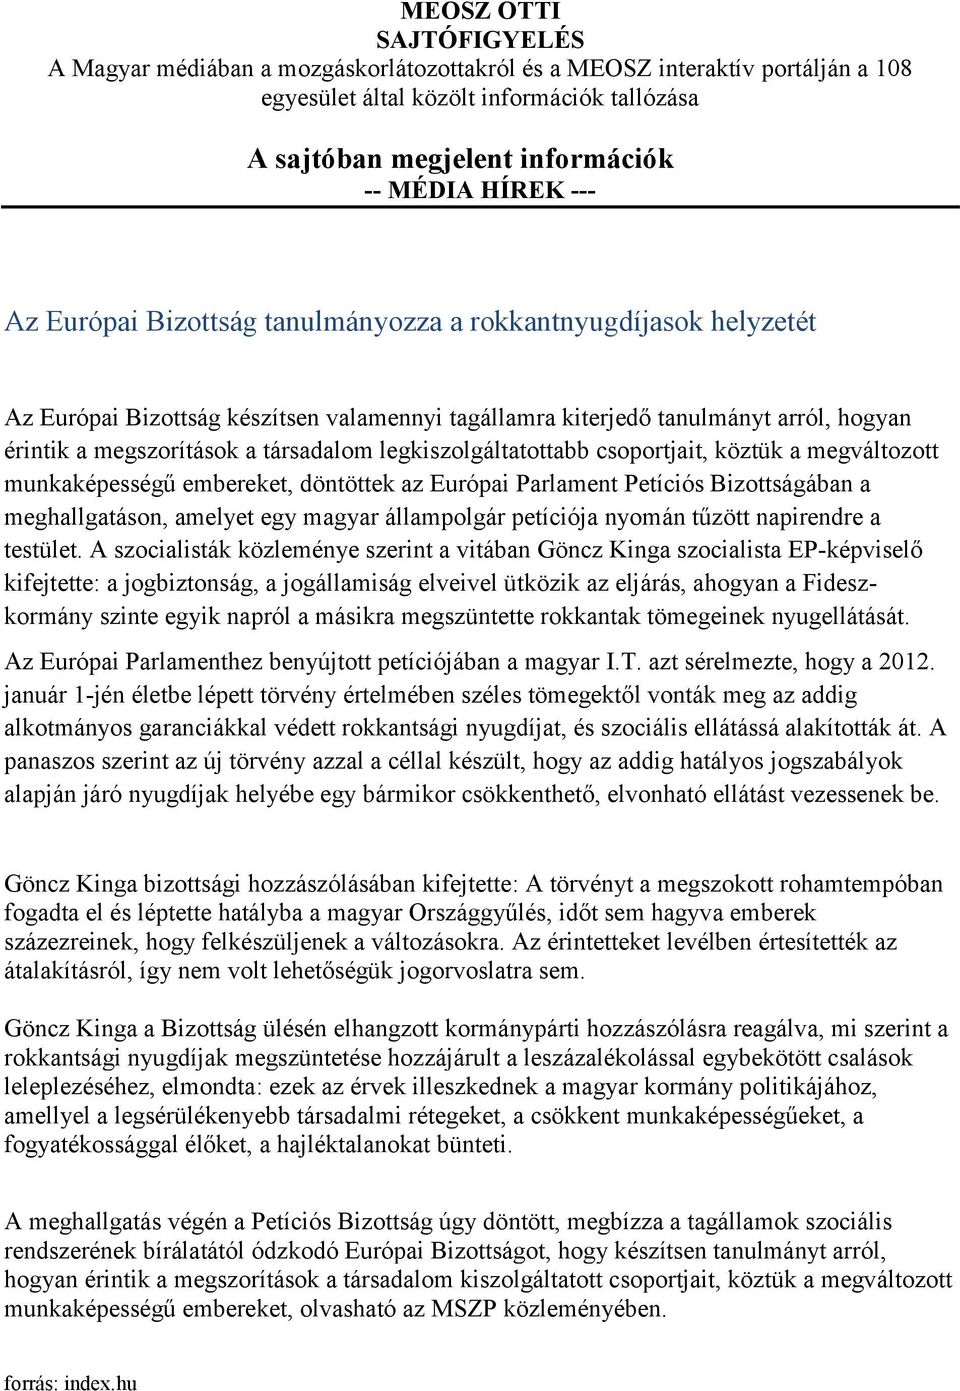 legkiszolgáltatottabb csoportjait, köztük a megváltozott munkaképességű embereket, döntöttek az Európai Parlament Petíciós Bizottságában a meghallgatáson, amelyet egy magyar állampolgár petíciója